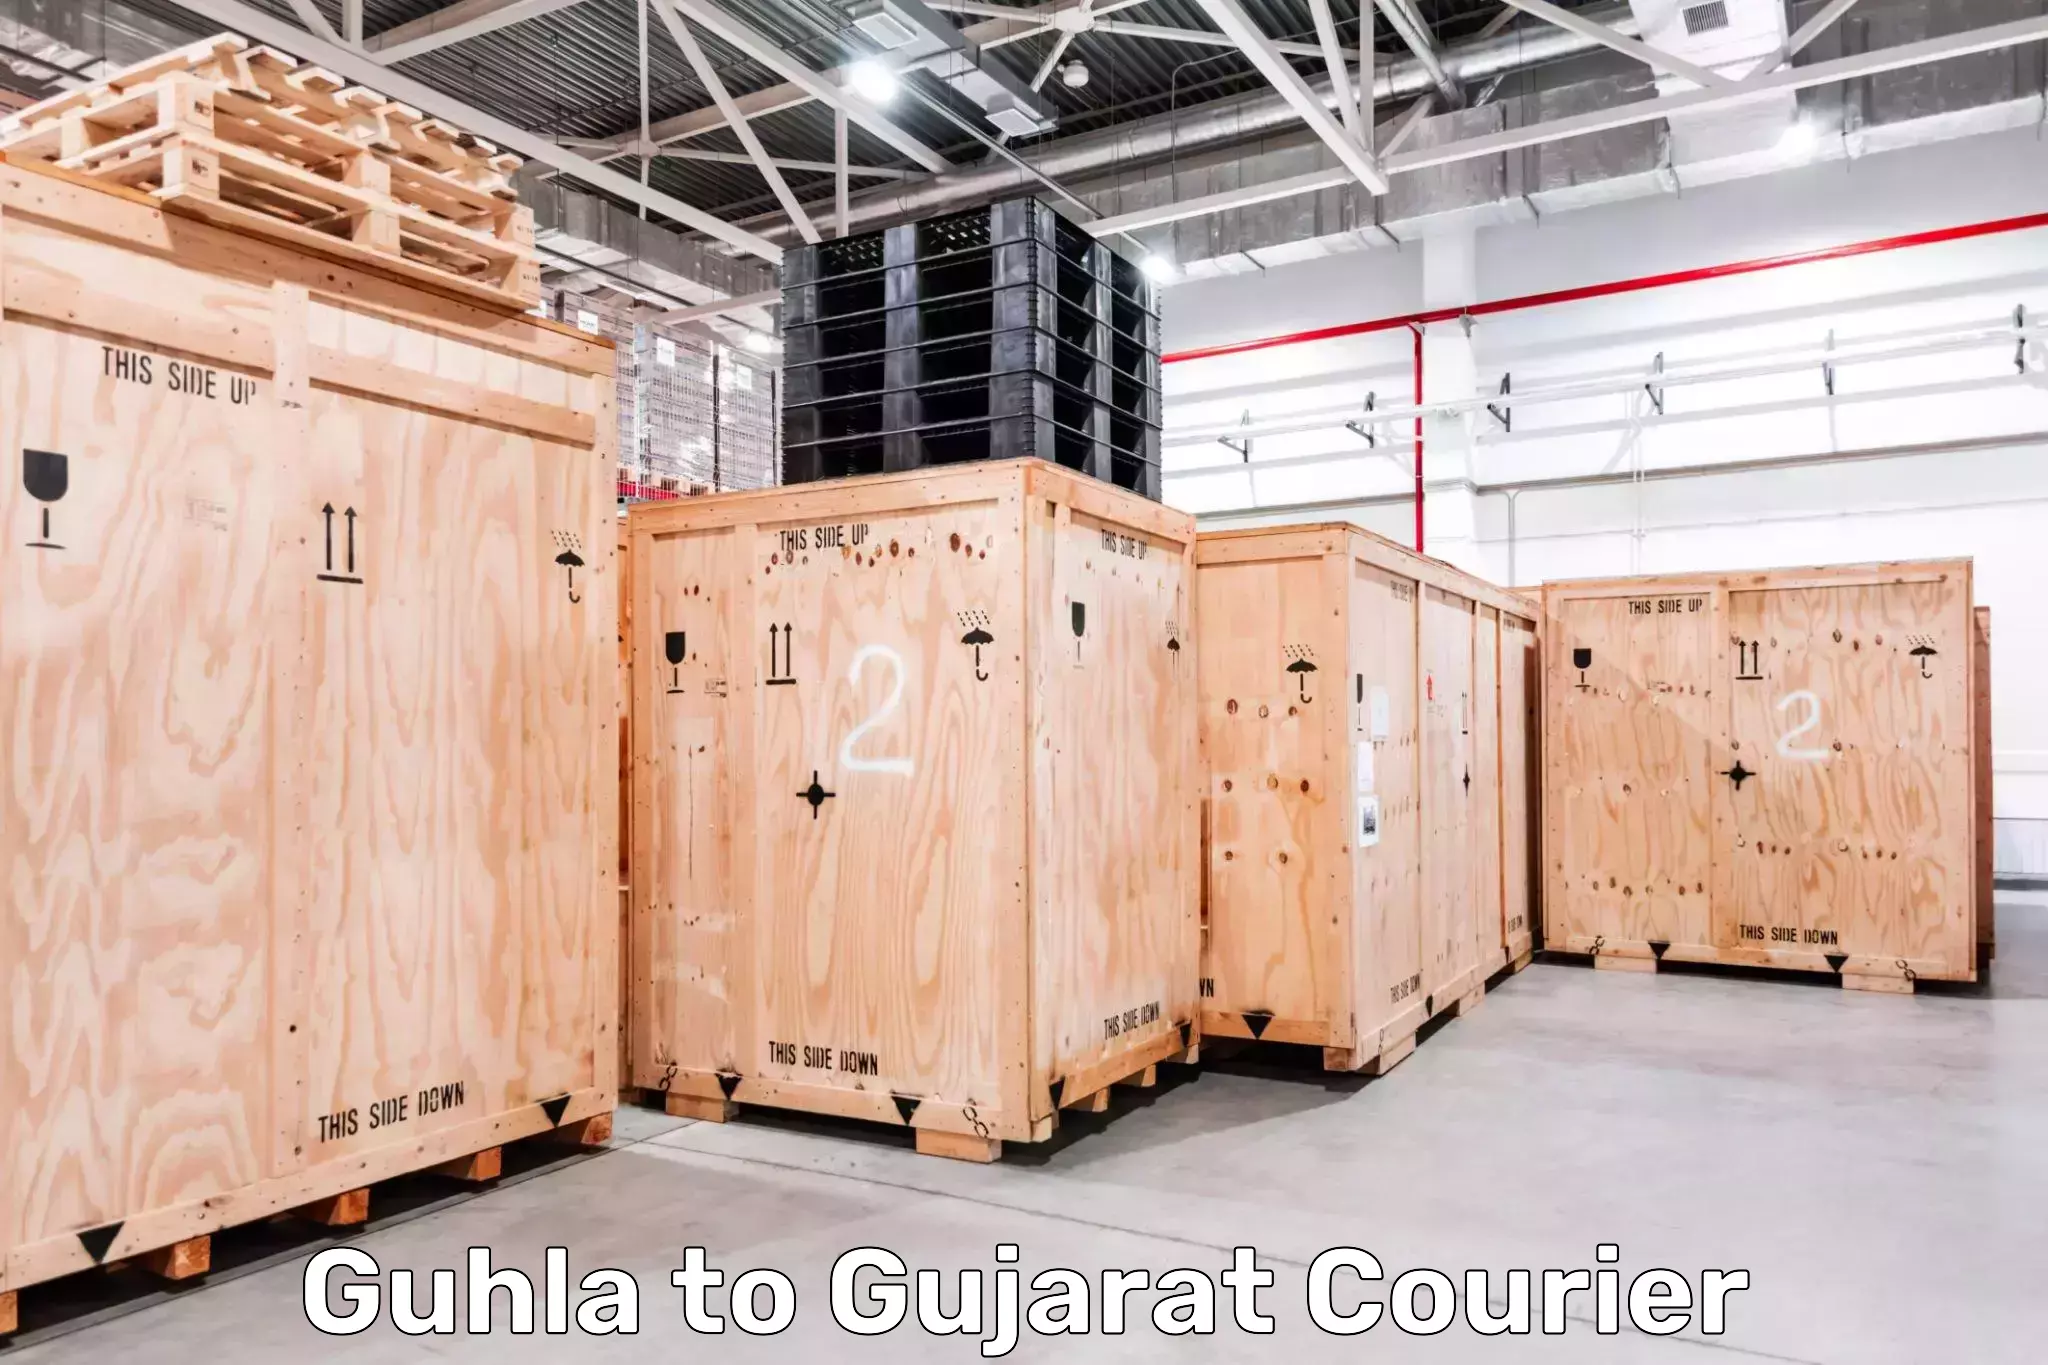 Innovative courier solutions Guhla to Rajkot